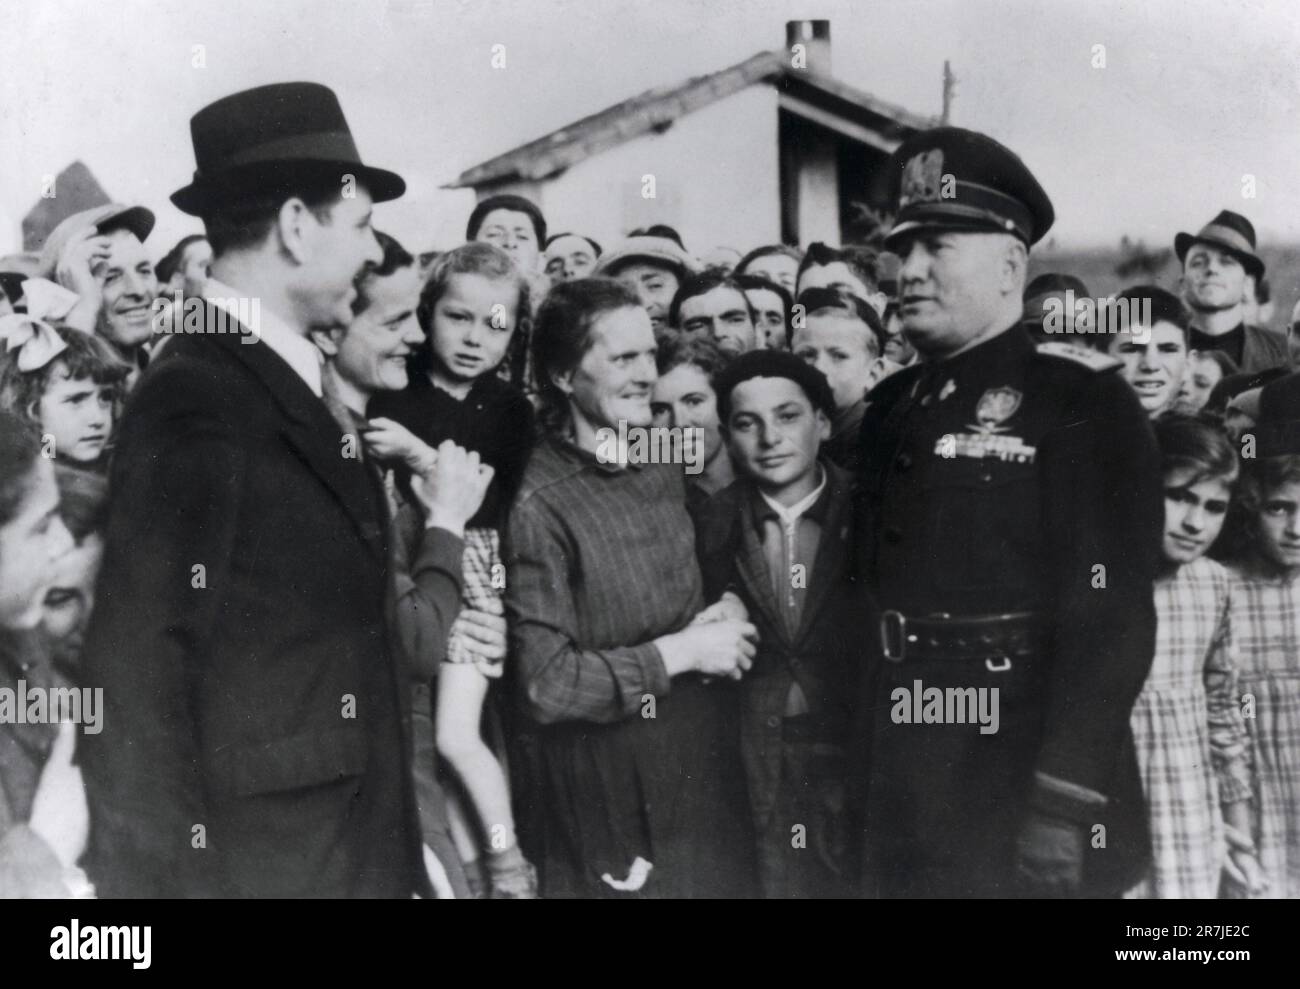 Le journaliste, politicien et dictateur italien Benito Mussolini portant un uniforme noir parmi les gens, Italie 1935 Banque D'Images